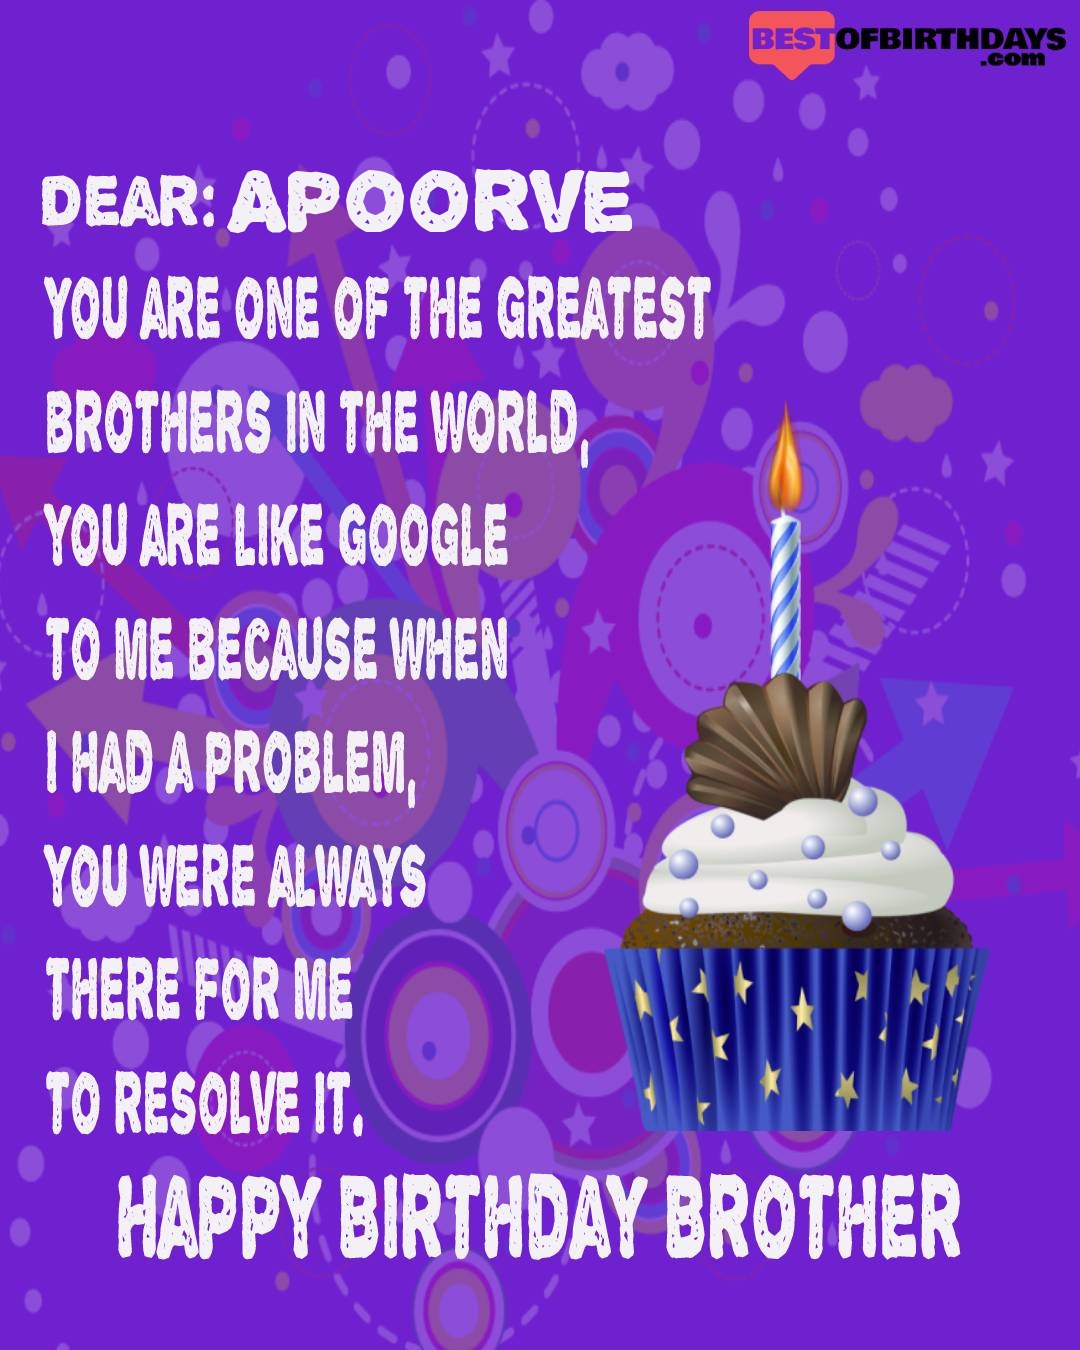 Happy birthday apoorve bhai brother bro